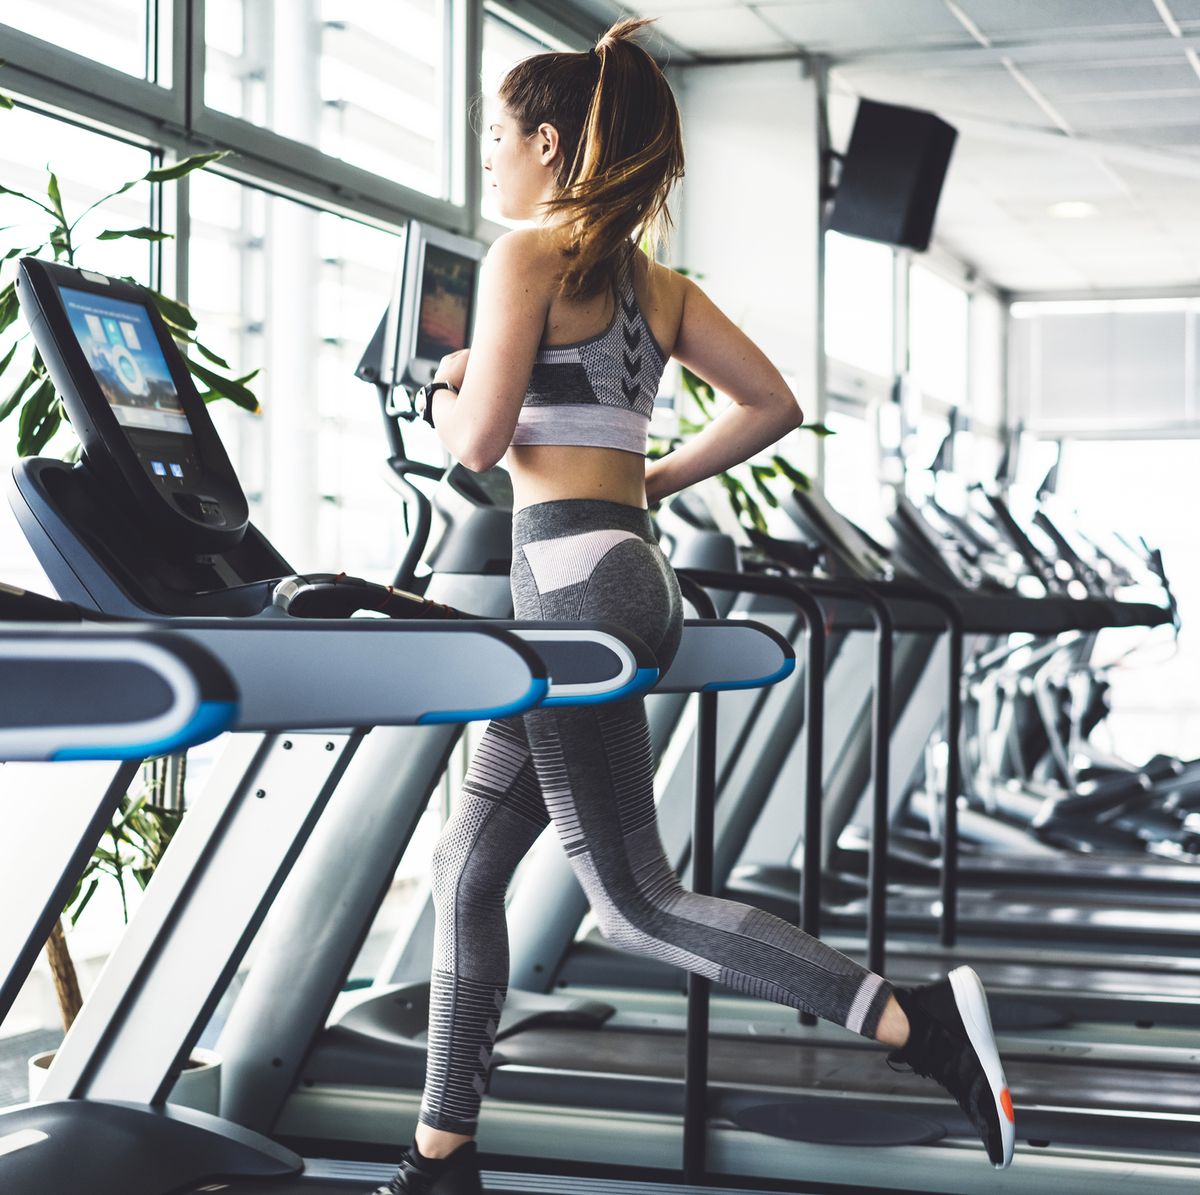 Treadmill Running | Beginner Treadmill Tips